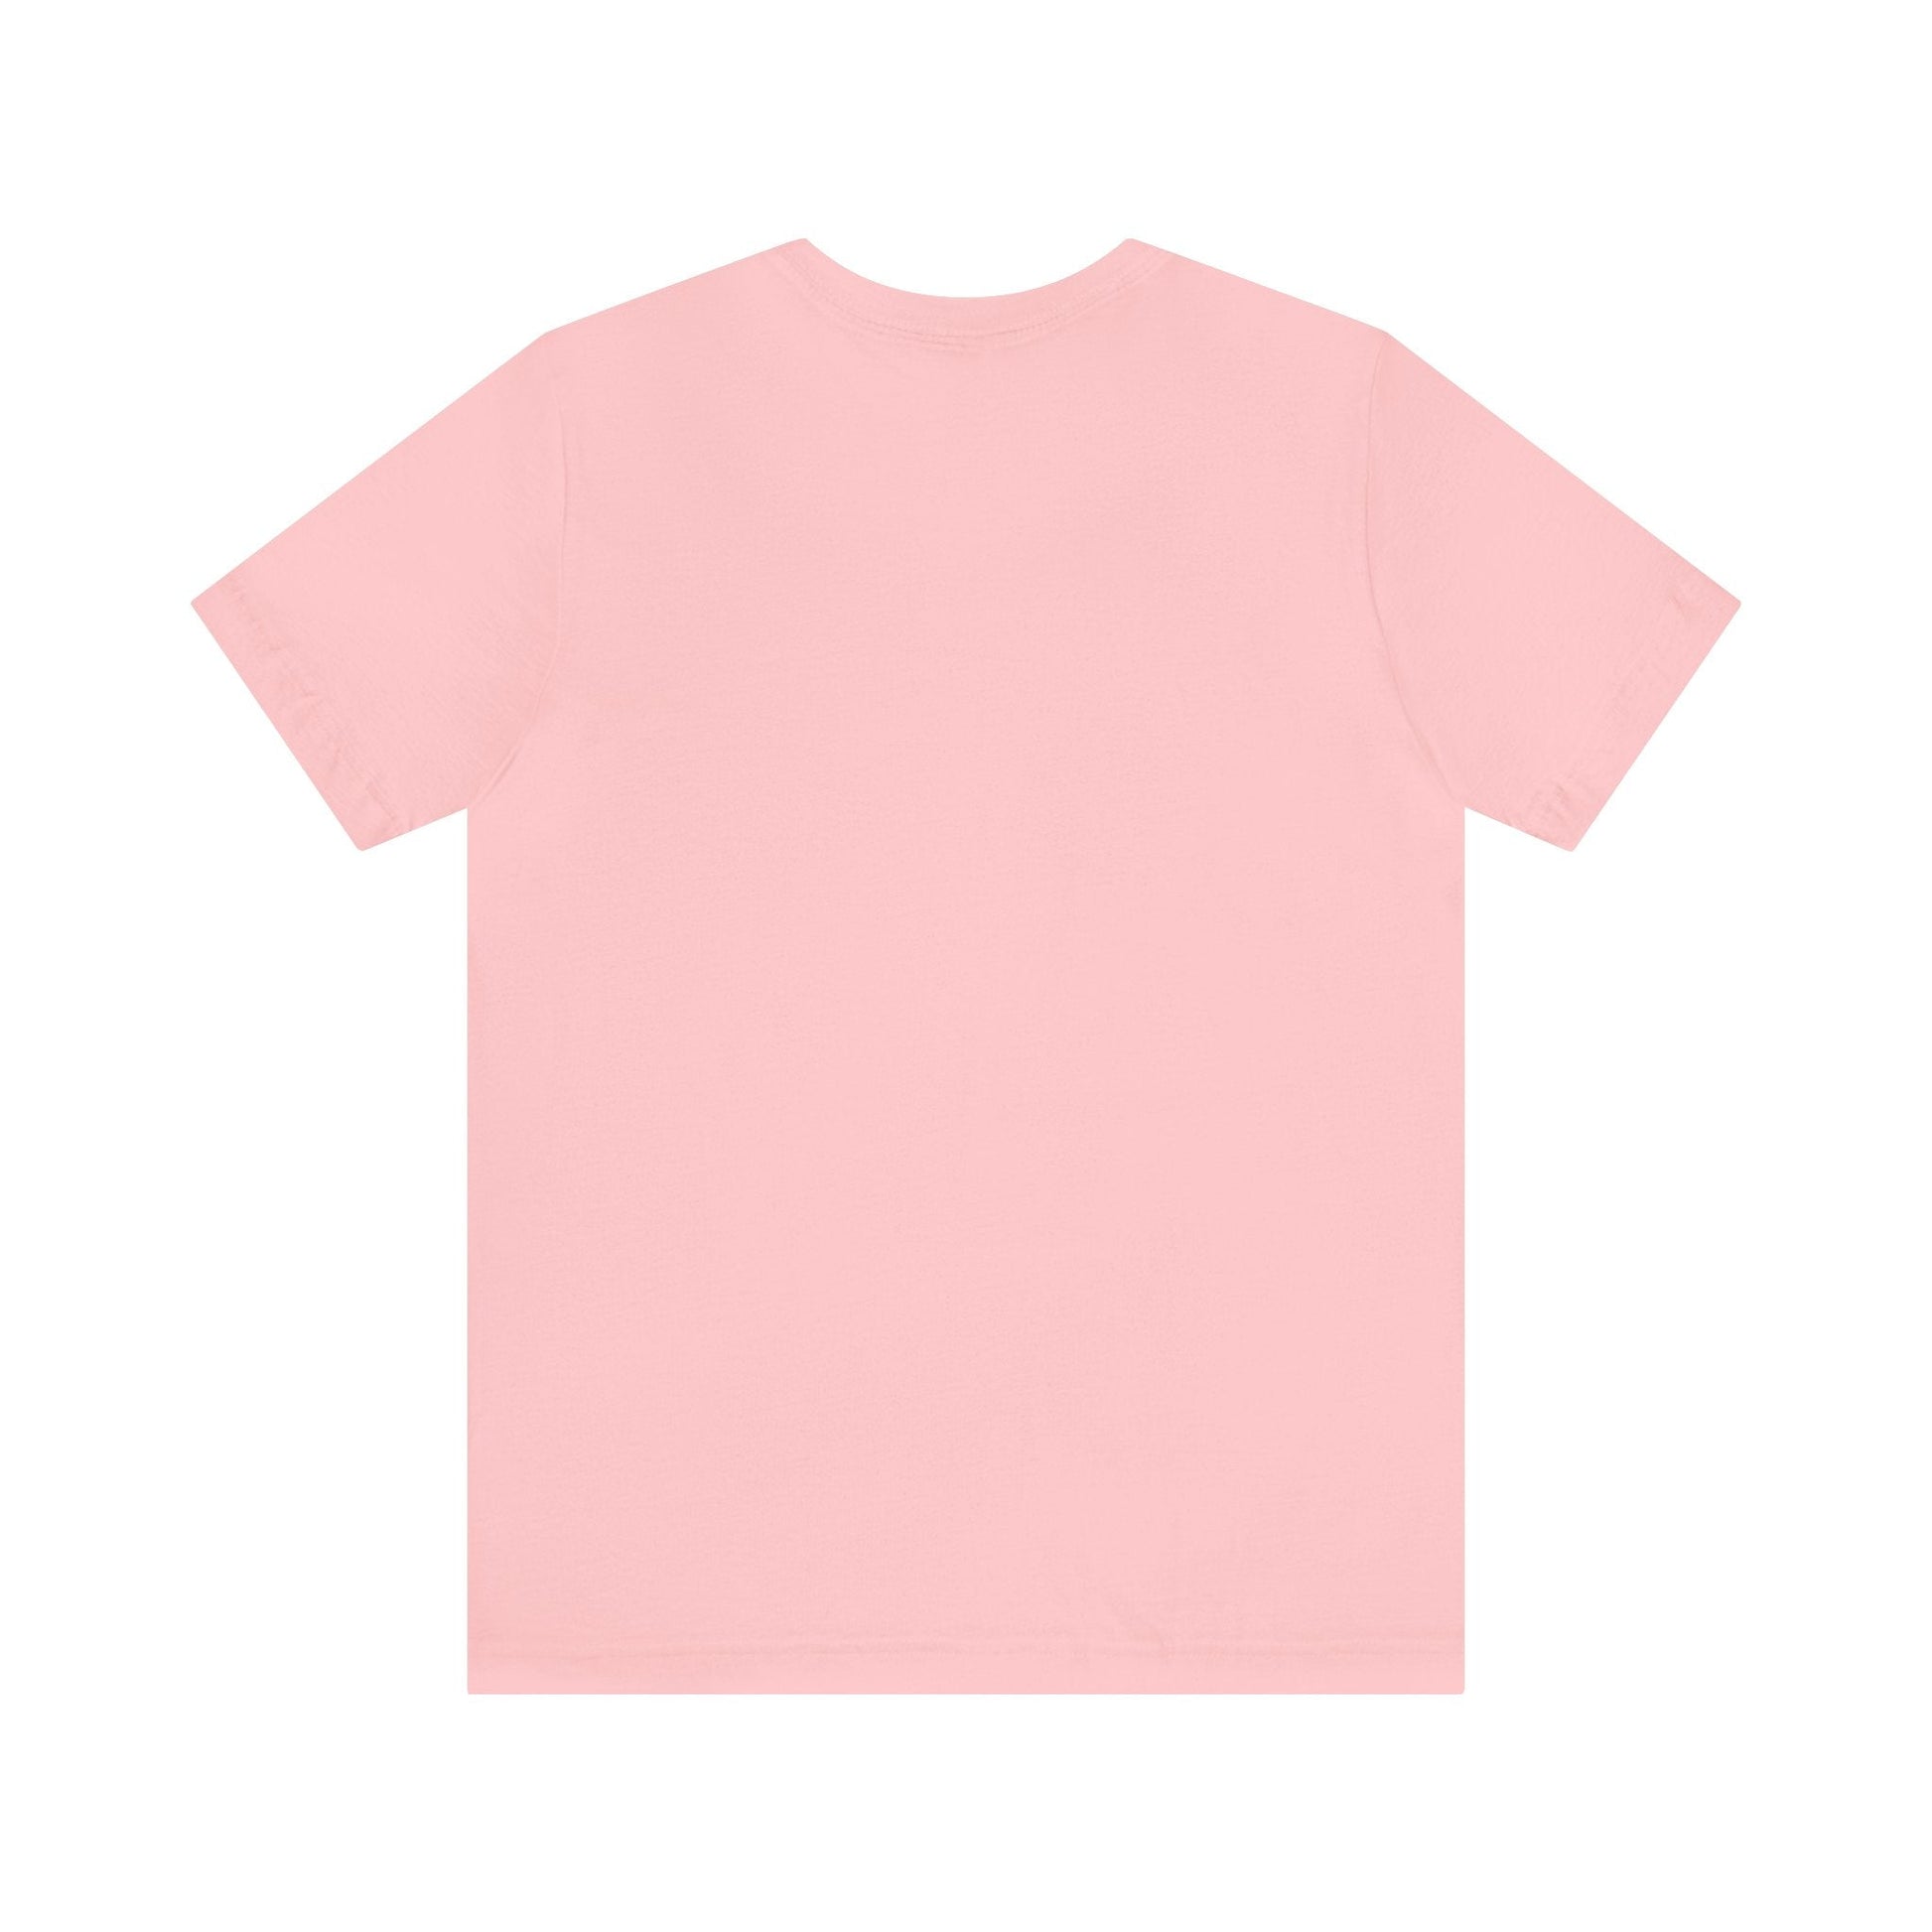 T-Shirt - I Just Love Golden Retrievers Unisex Jersey Short Sleeve Tee